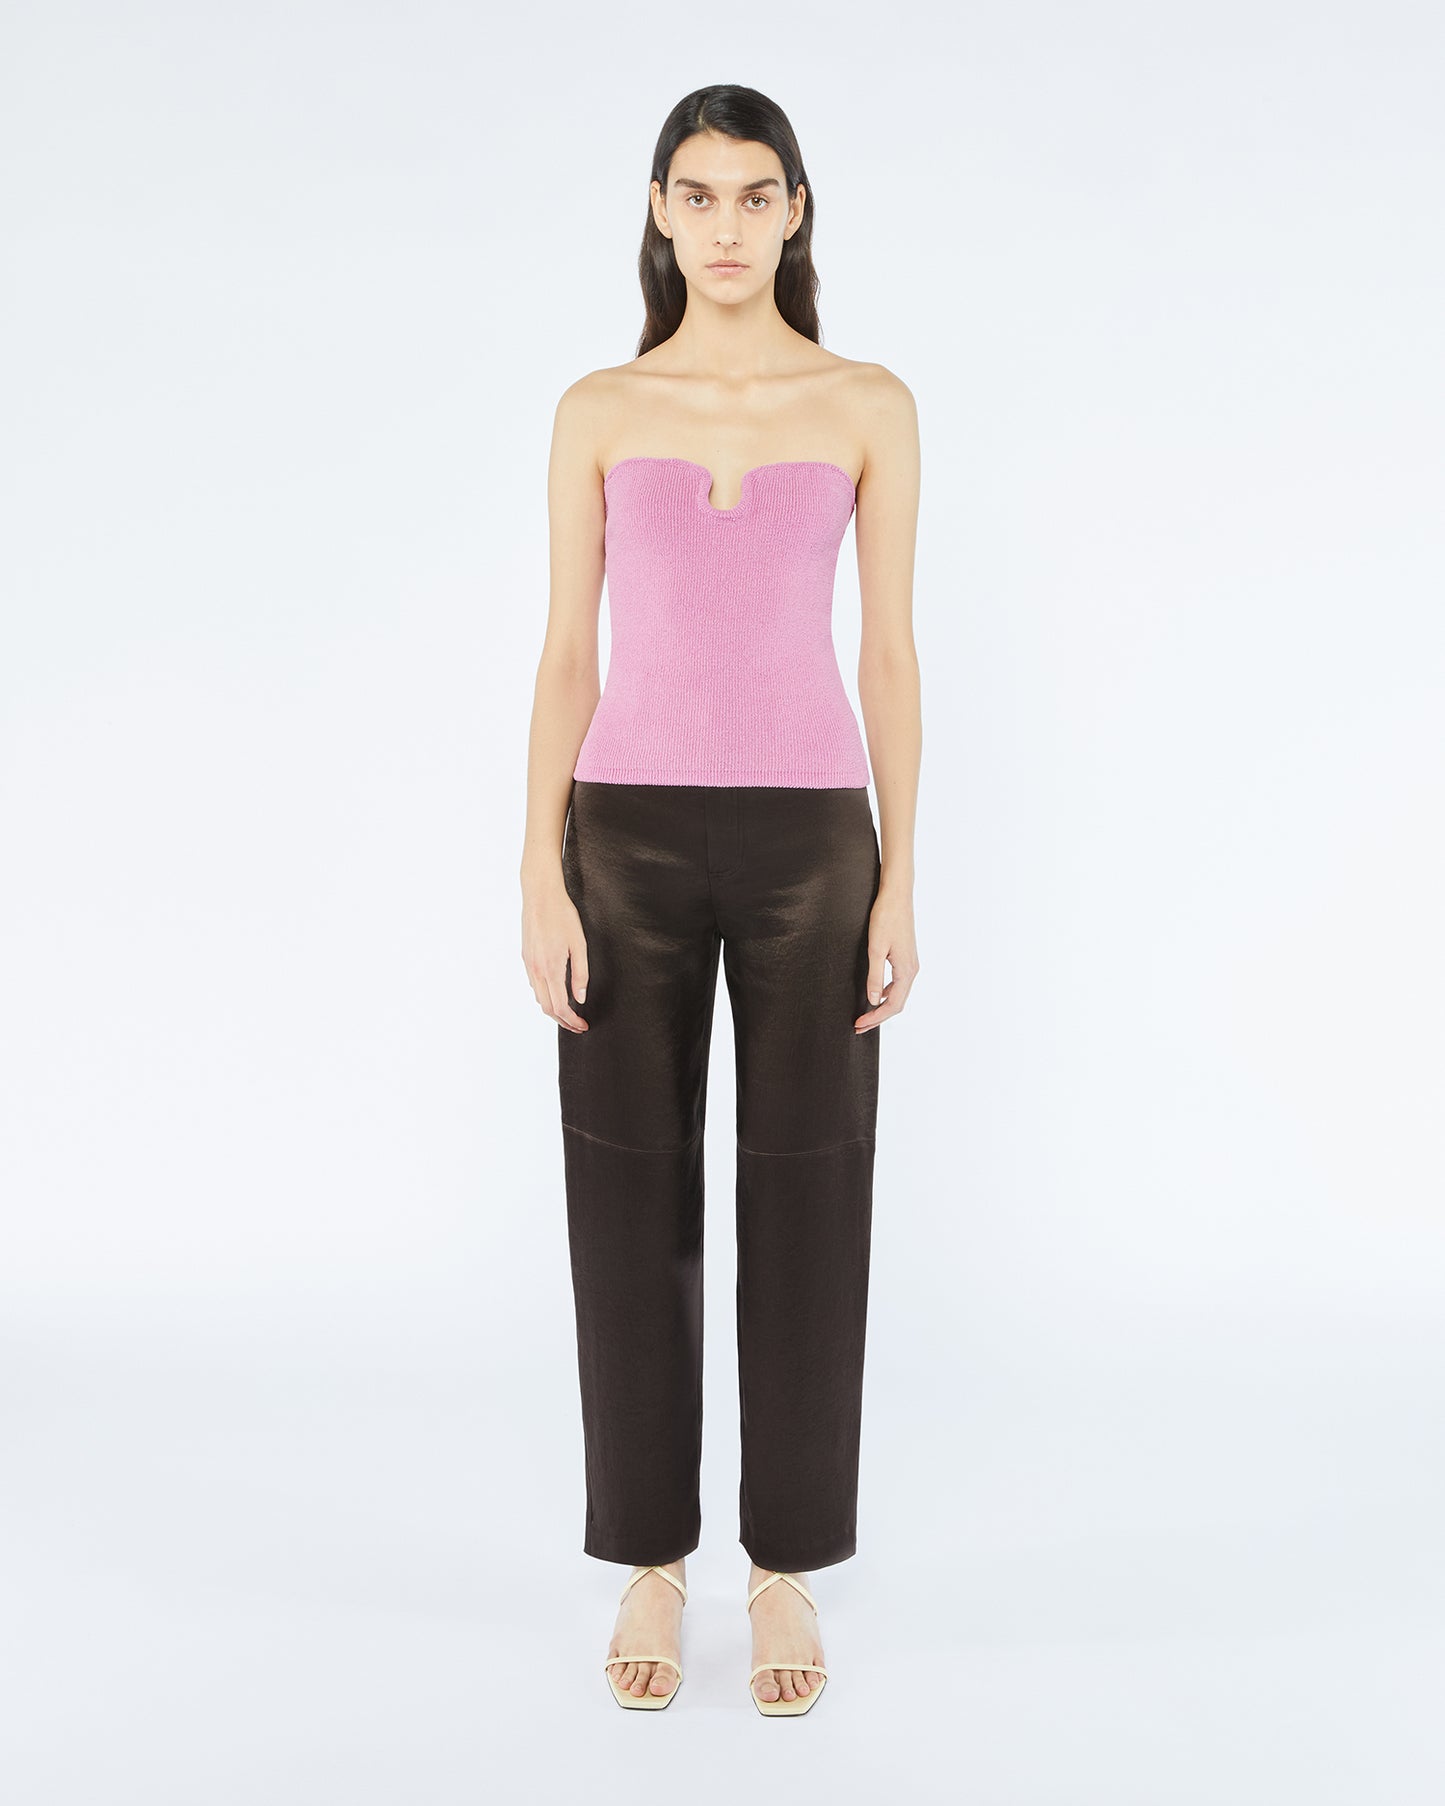 Zara, Tops, New Zara Pink Texture Corset Top